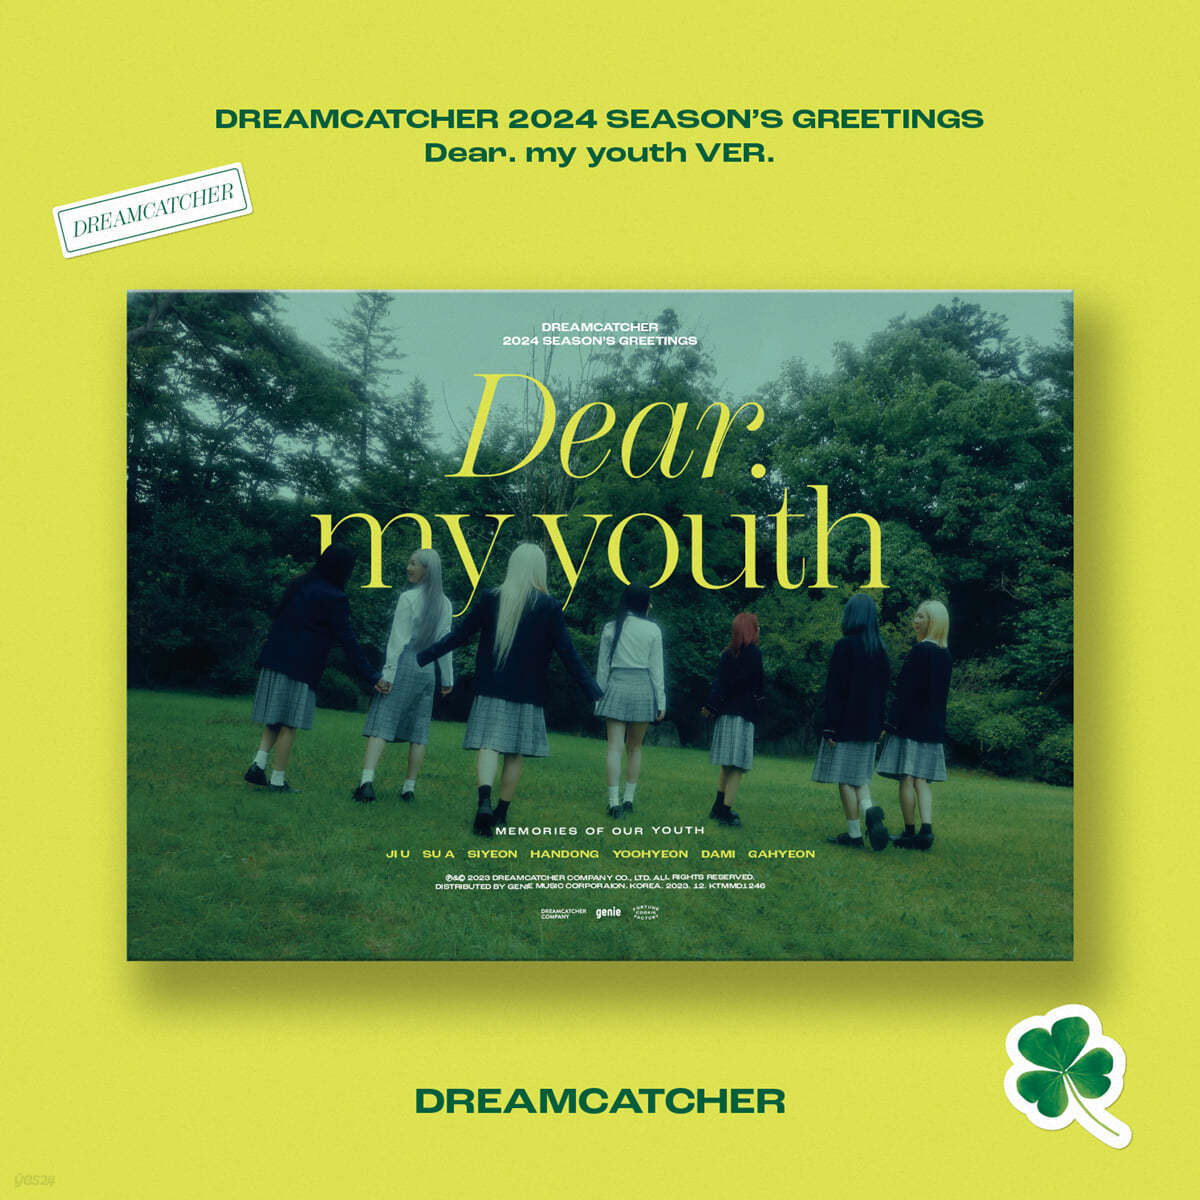 드림캐쳐 (Dreamcatcher) 2024 시즌 그리팅 [Dear. my youth ver.]